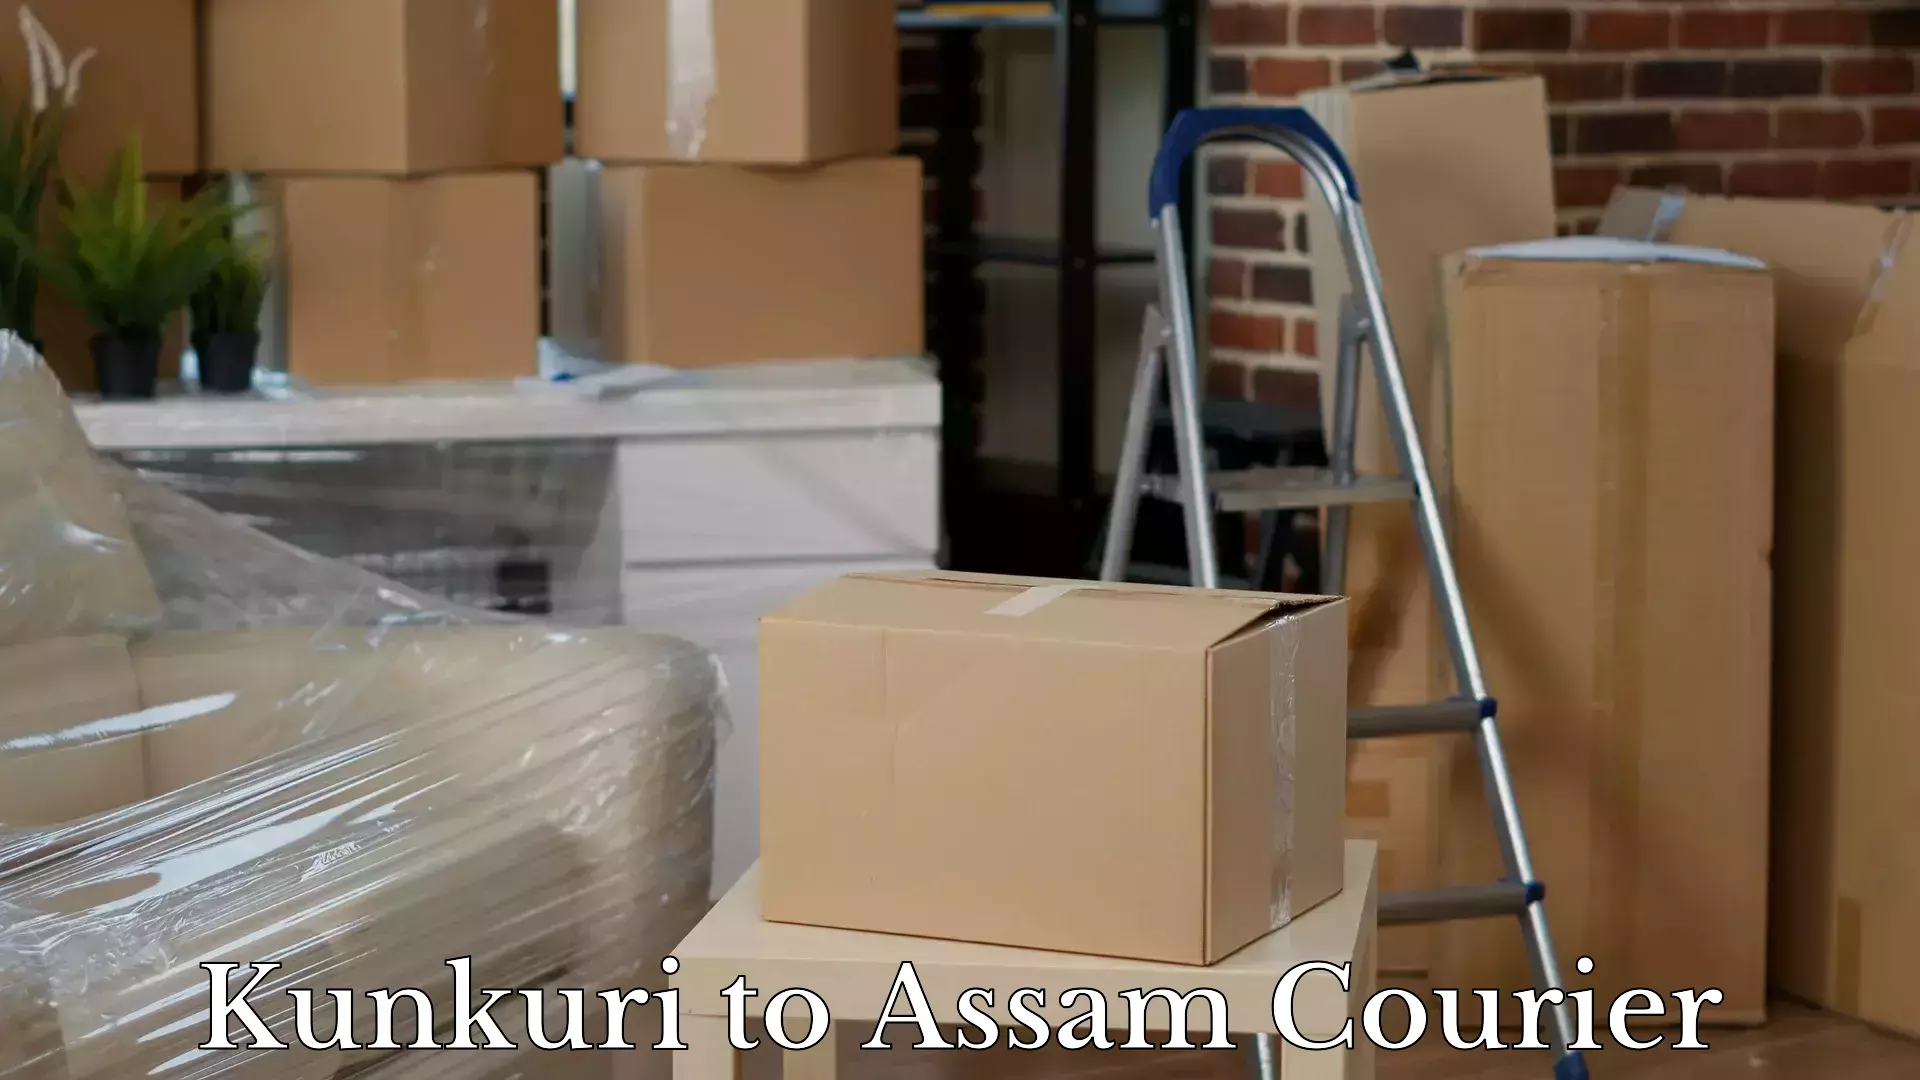 Door to door luggage delivery Kunkuri to Assam